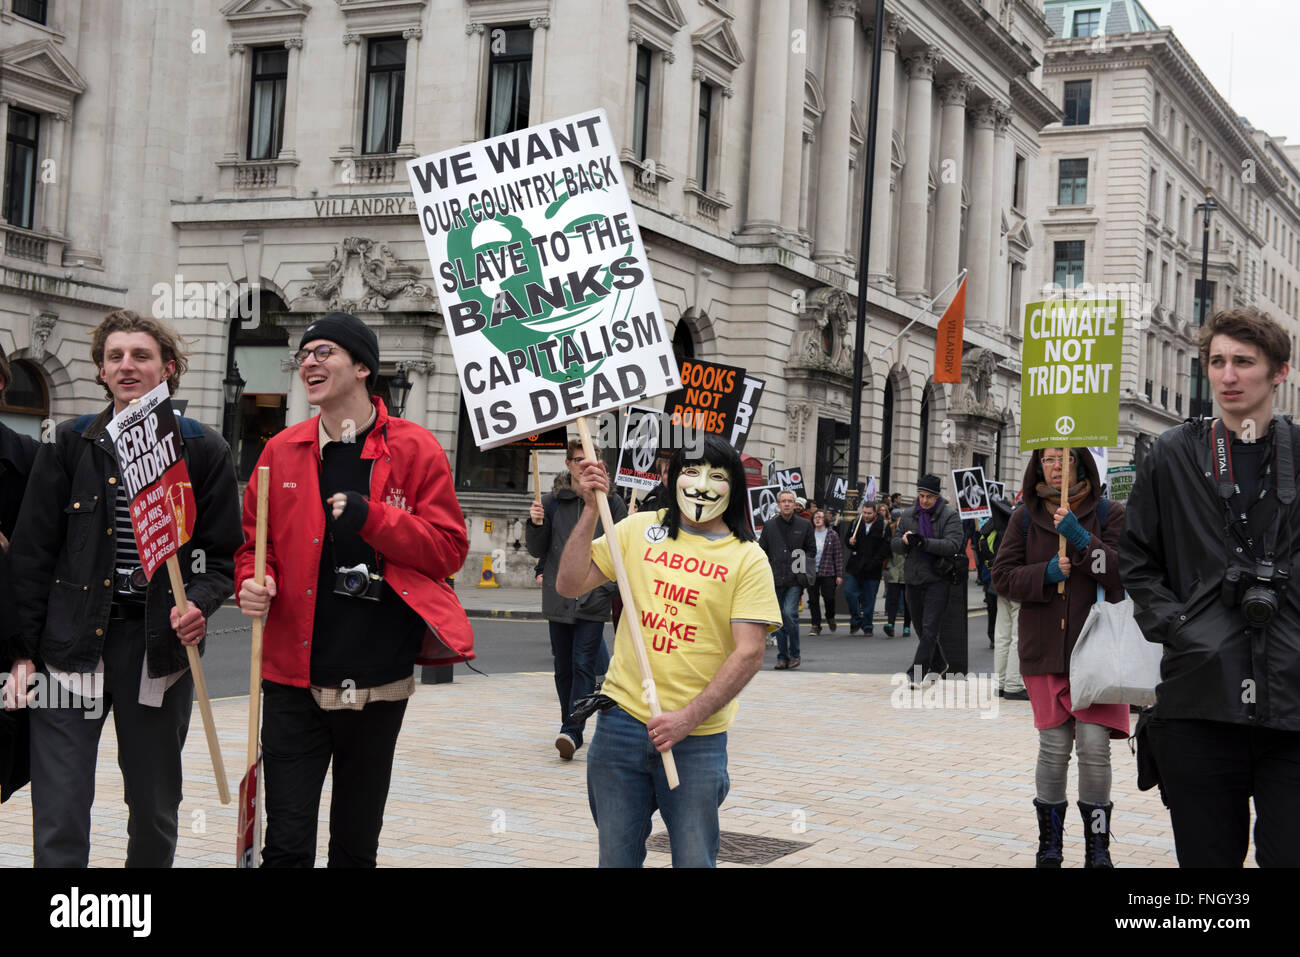 Manifestant portant masque anonyme est holding a placard 'Le capitalisme est mort' au cours de la manifestation anti-nucléaire à Londres. Banque D'Images